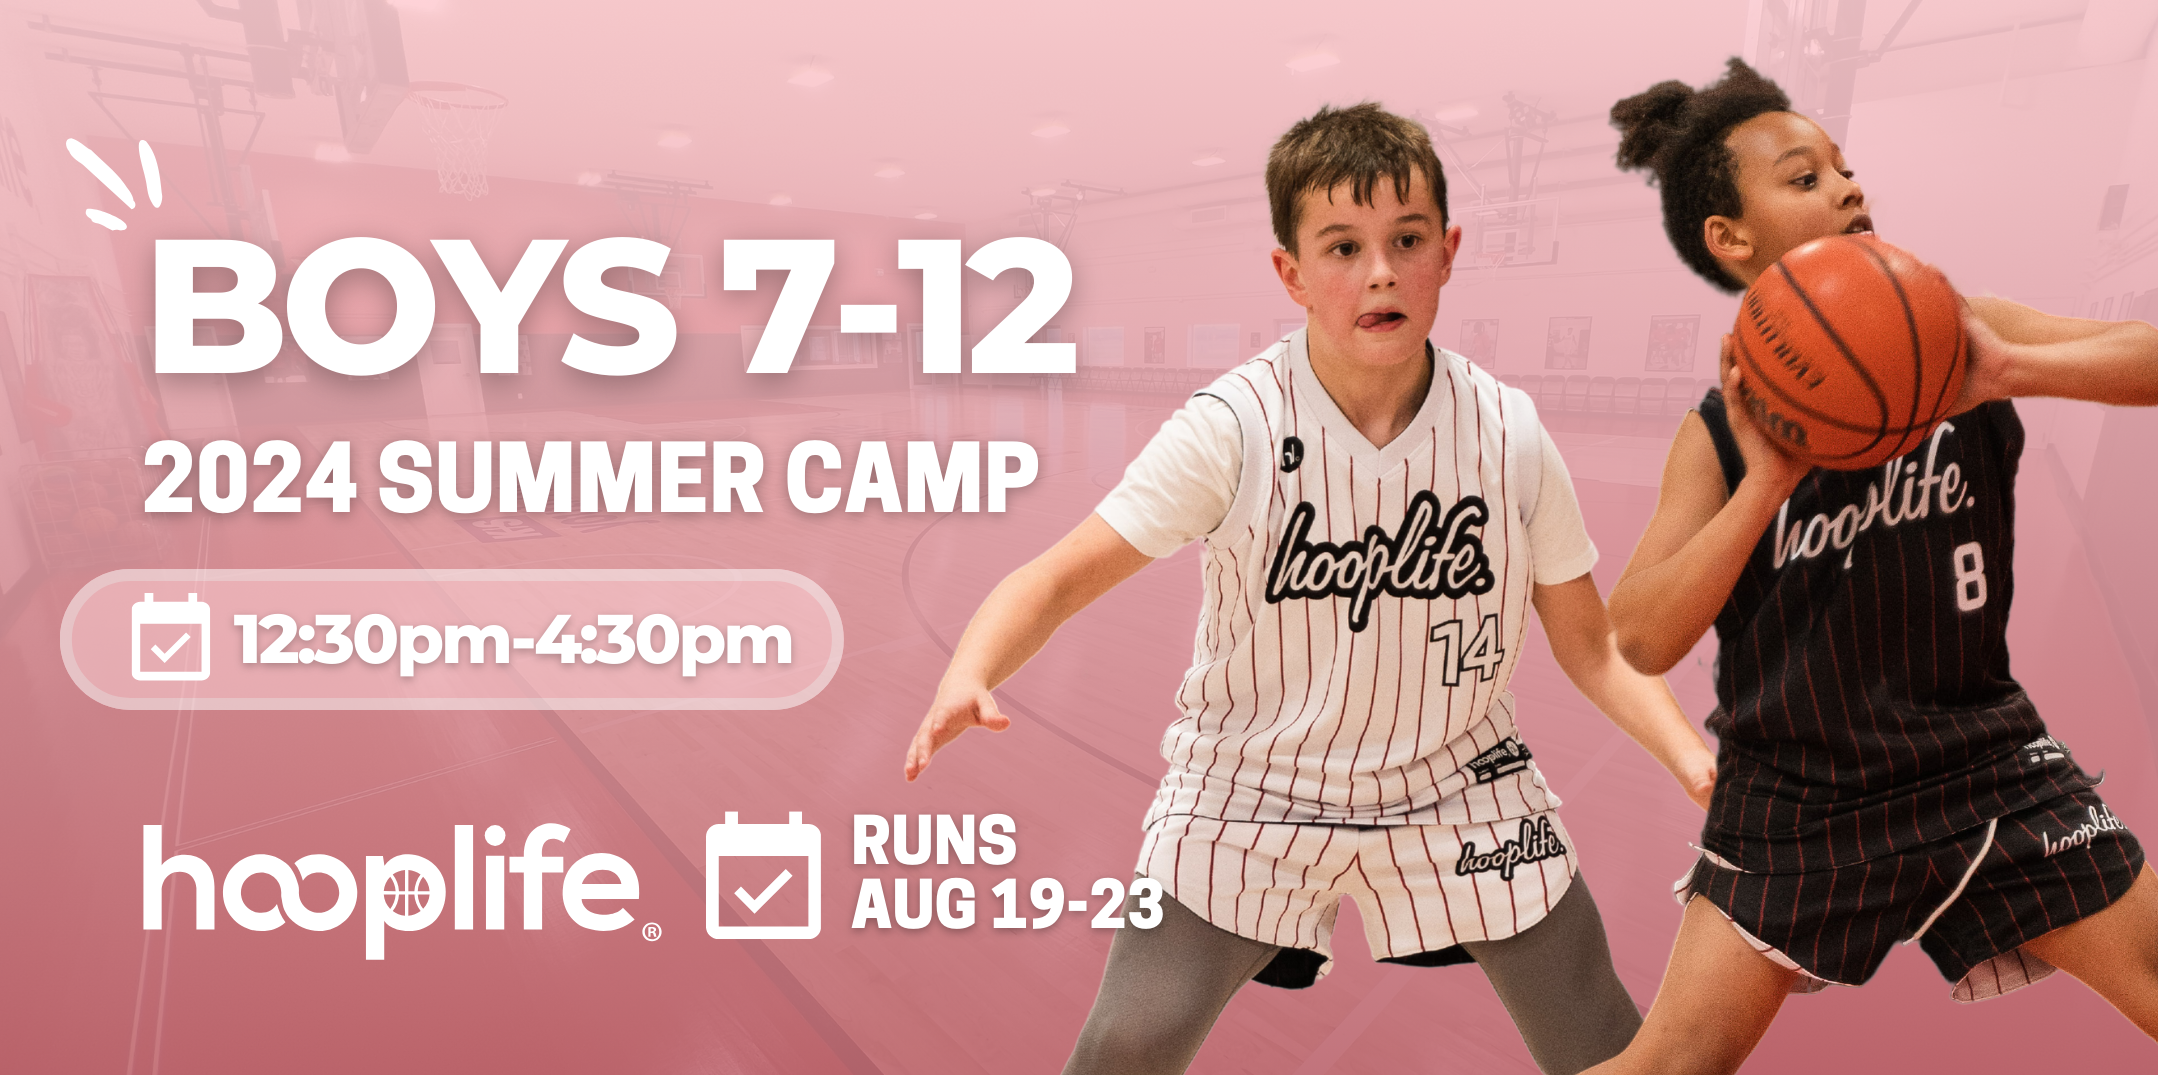 Boys 7-12 Summer Camp | Aug 19-23